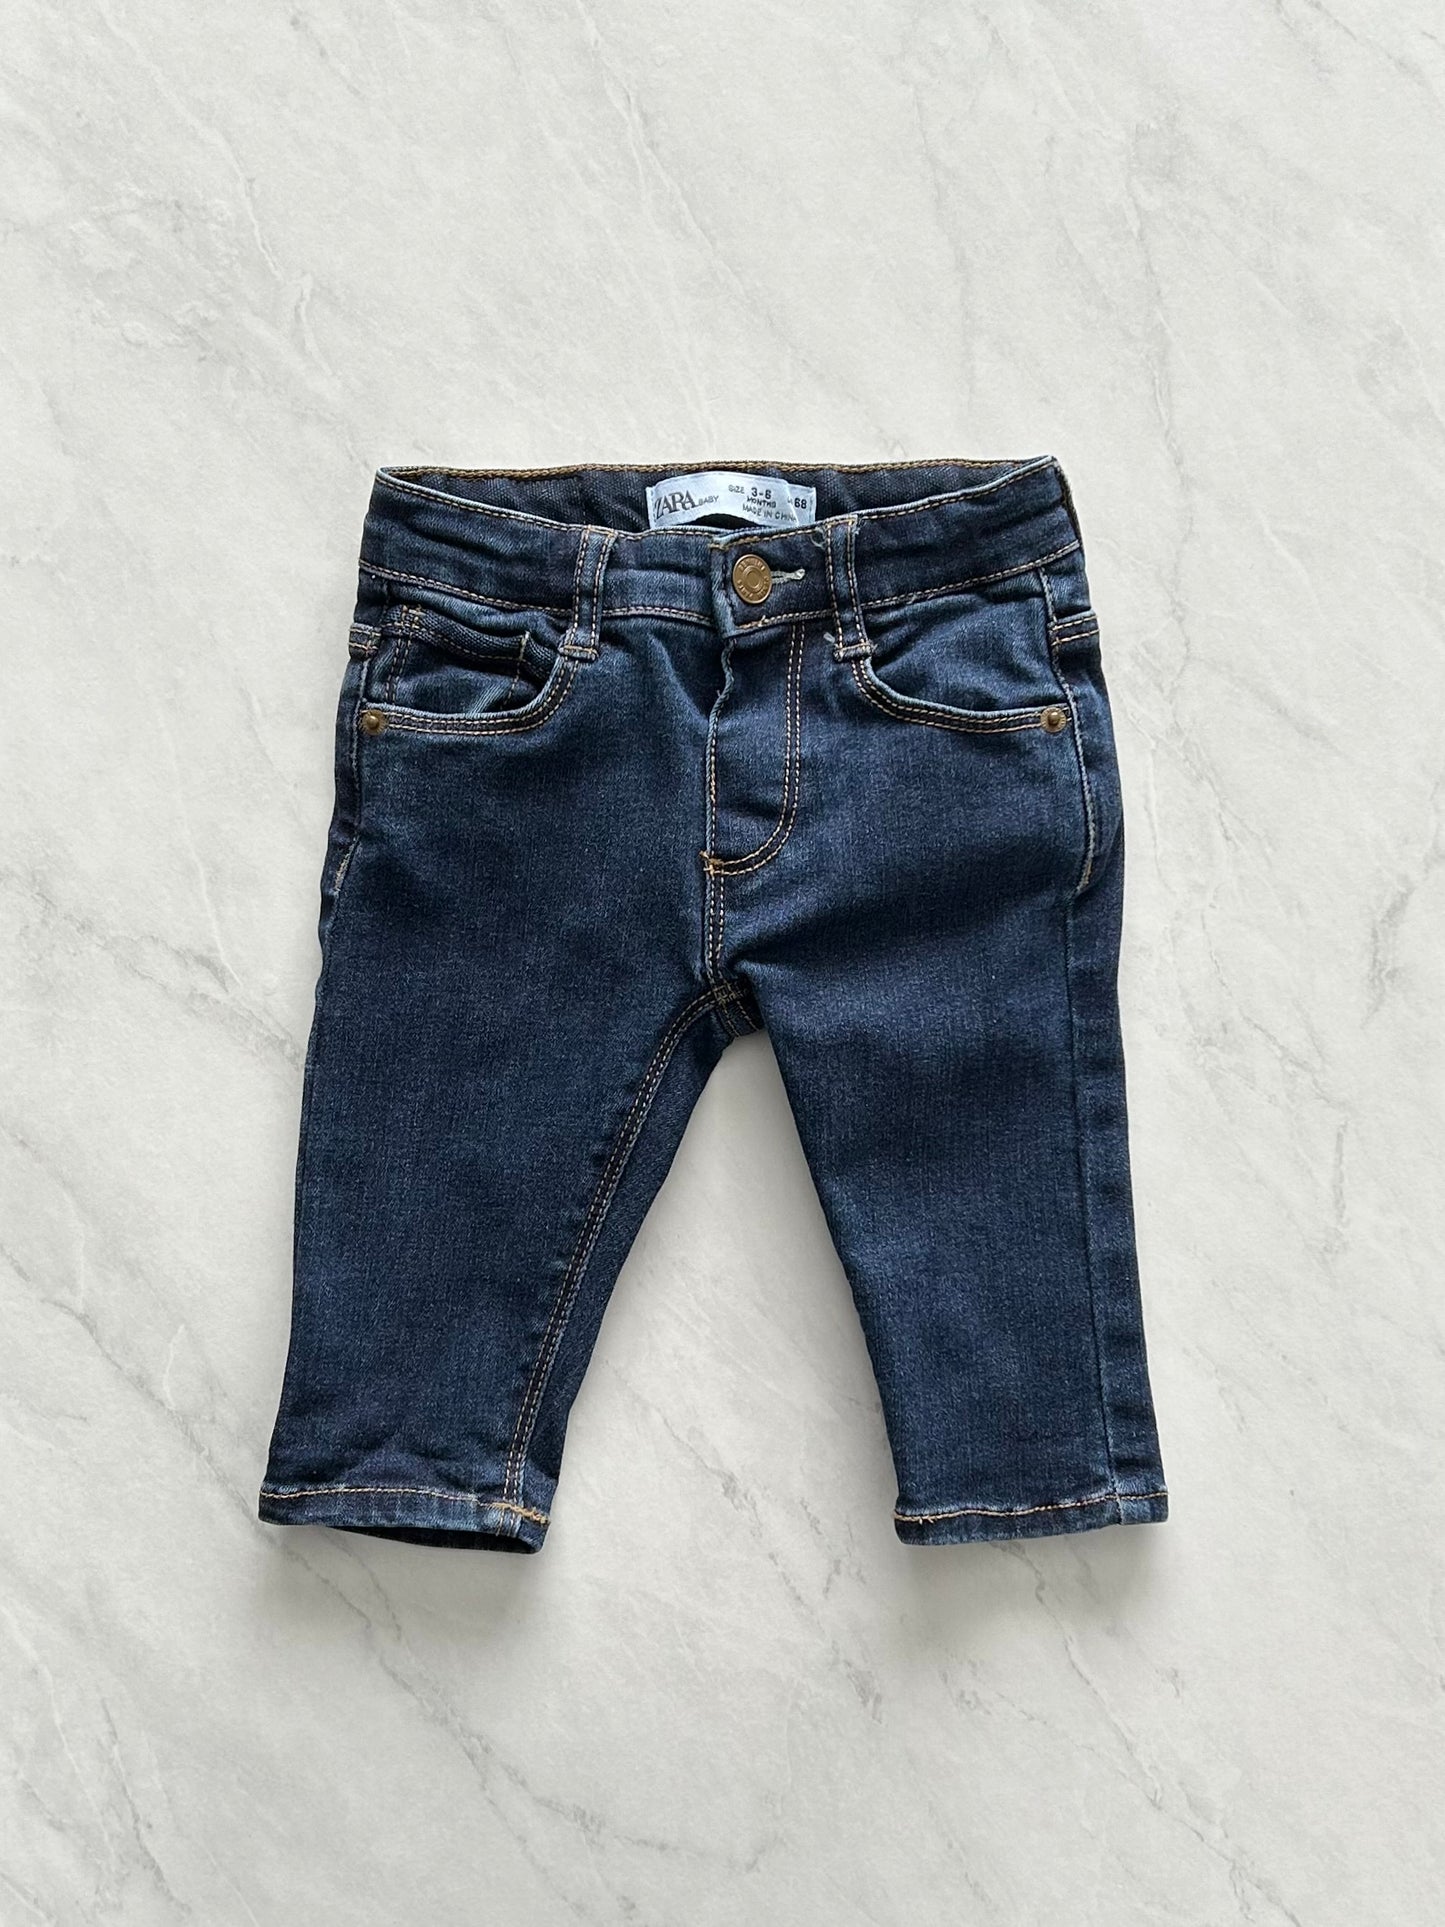 Jeans - Zara - 3-6 months